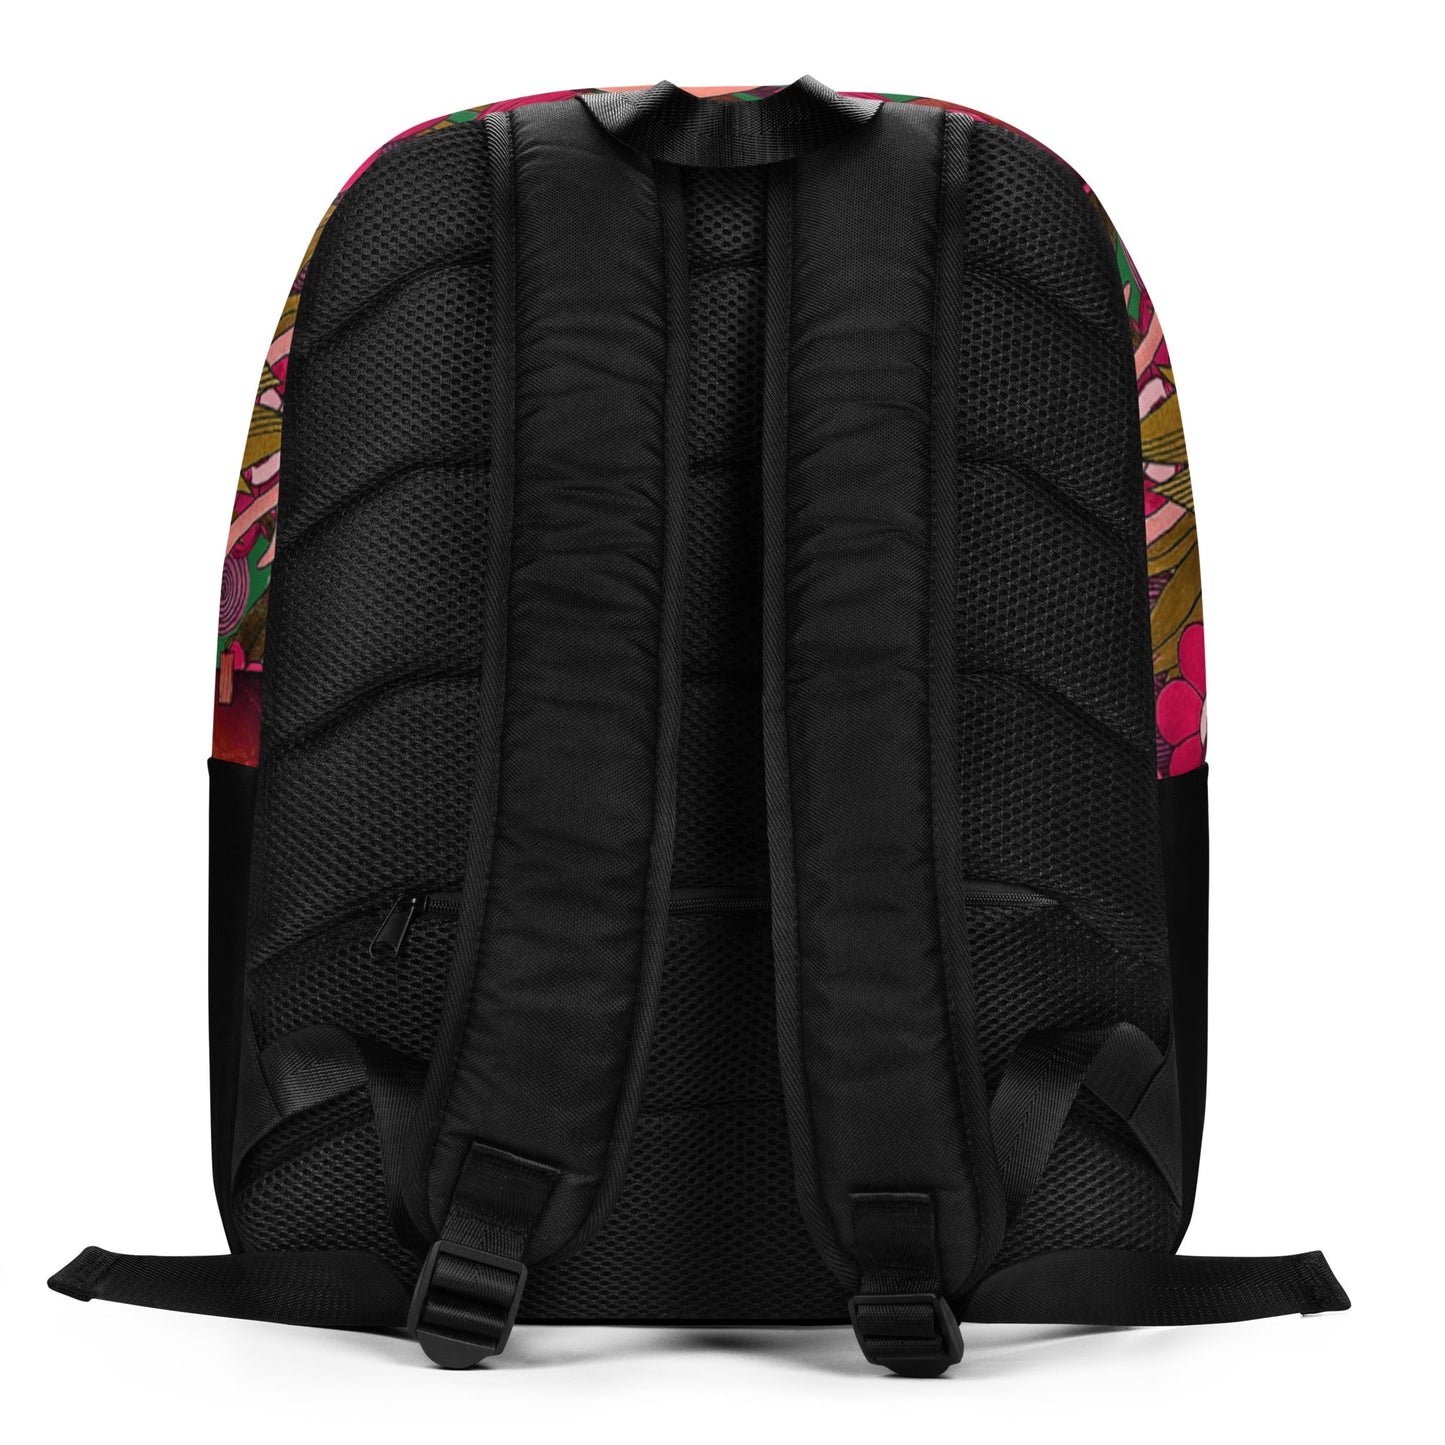 LOTUS Minimalist Backpack - Bonotee